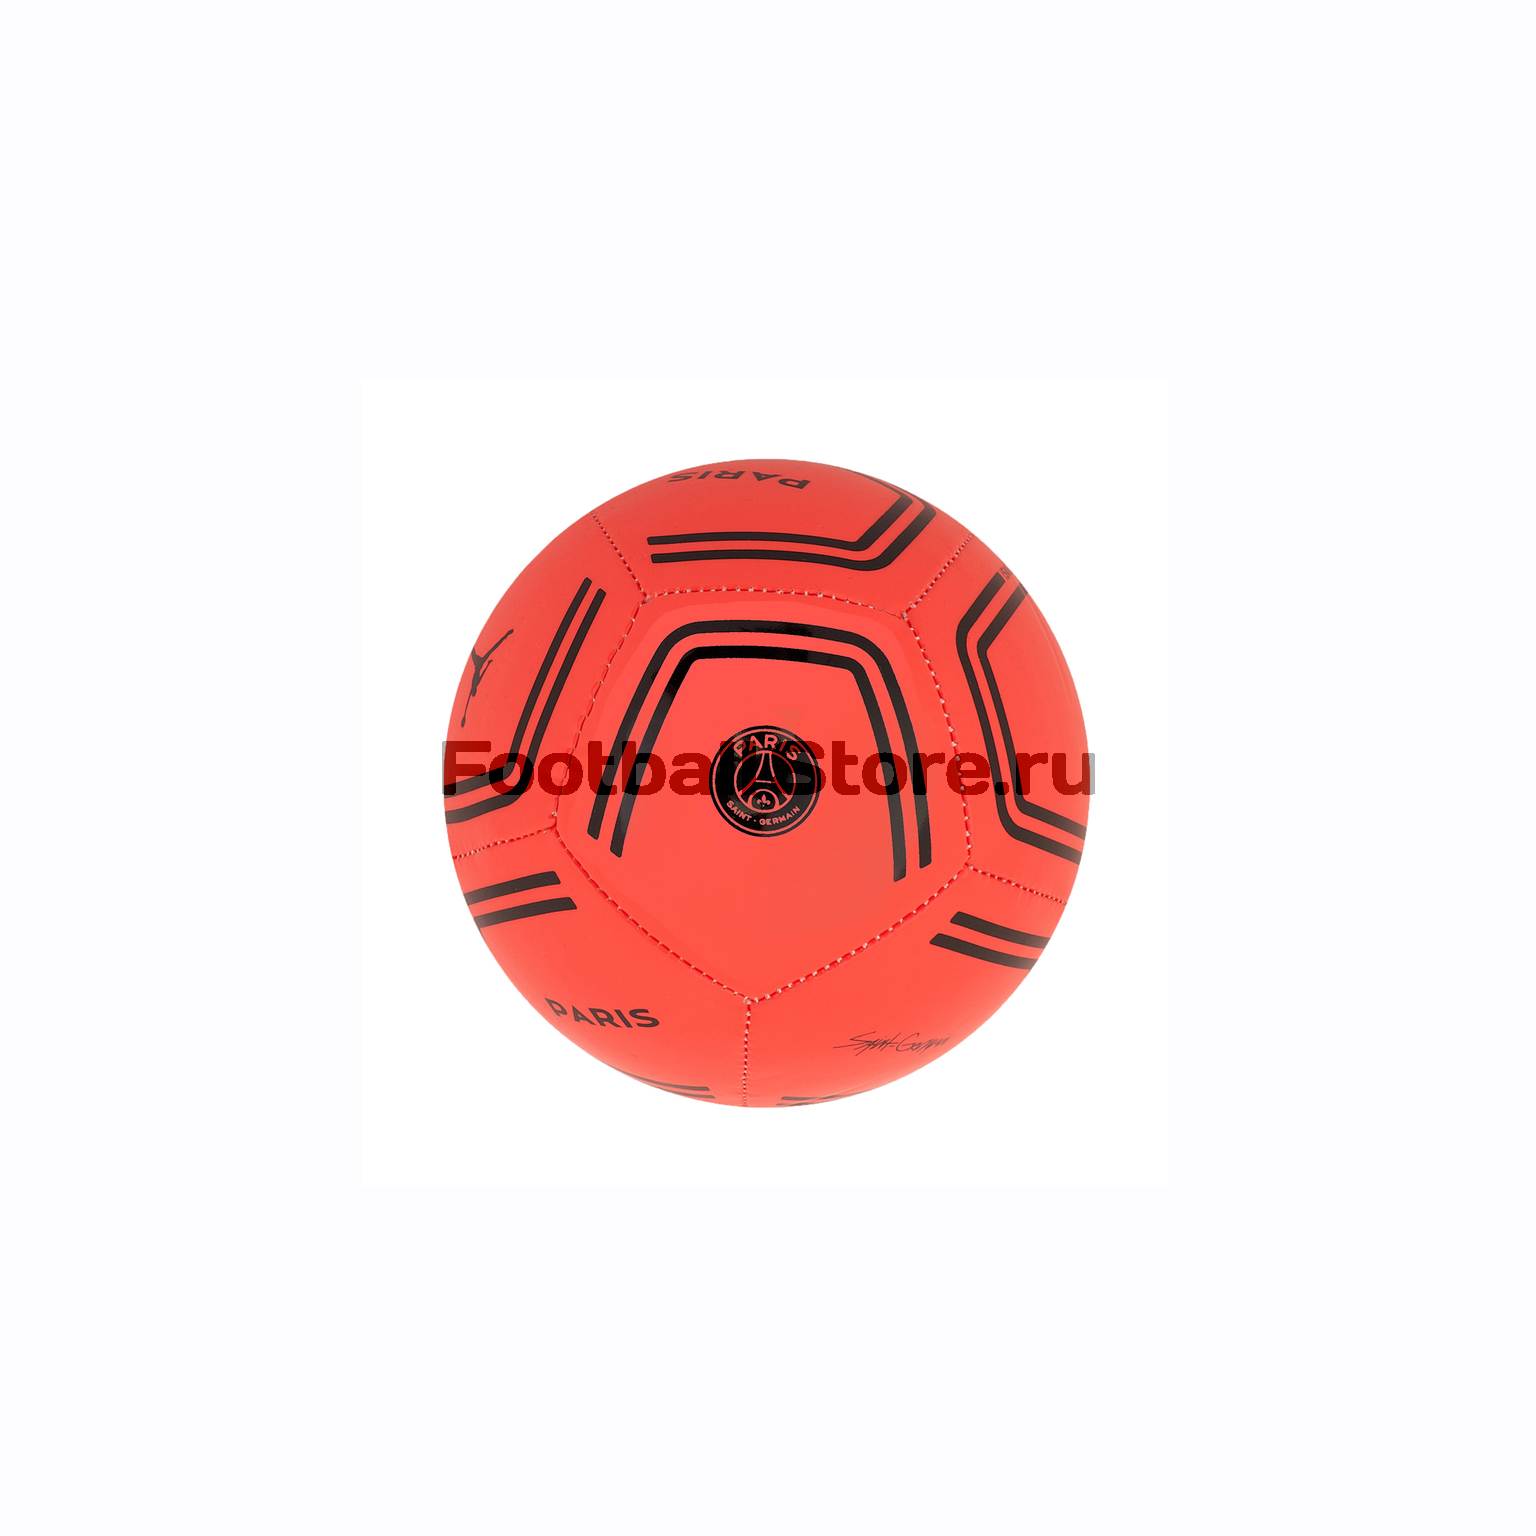 Мяч сувенирный Nike PSG CQ6412-610